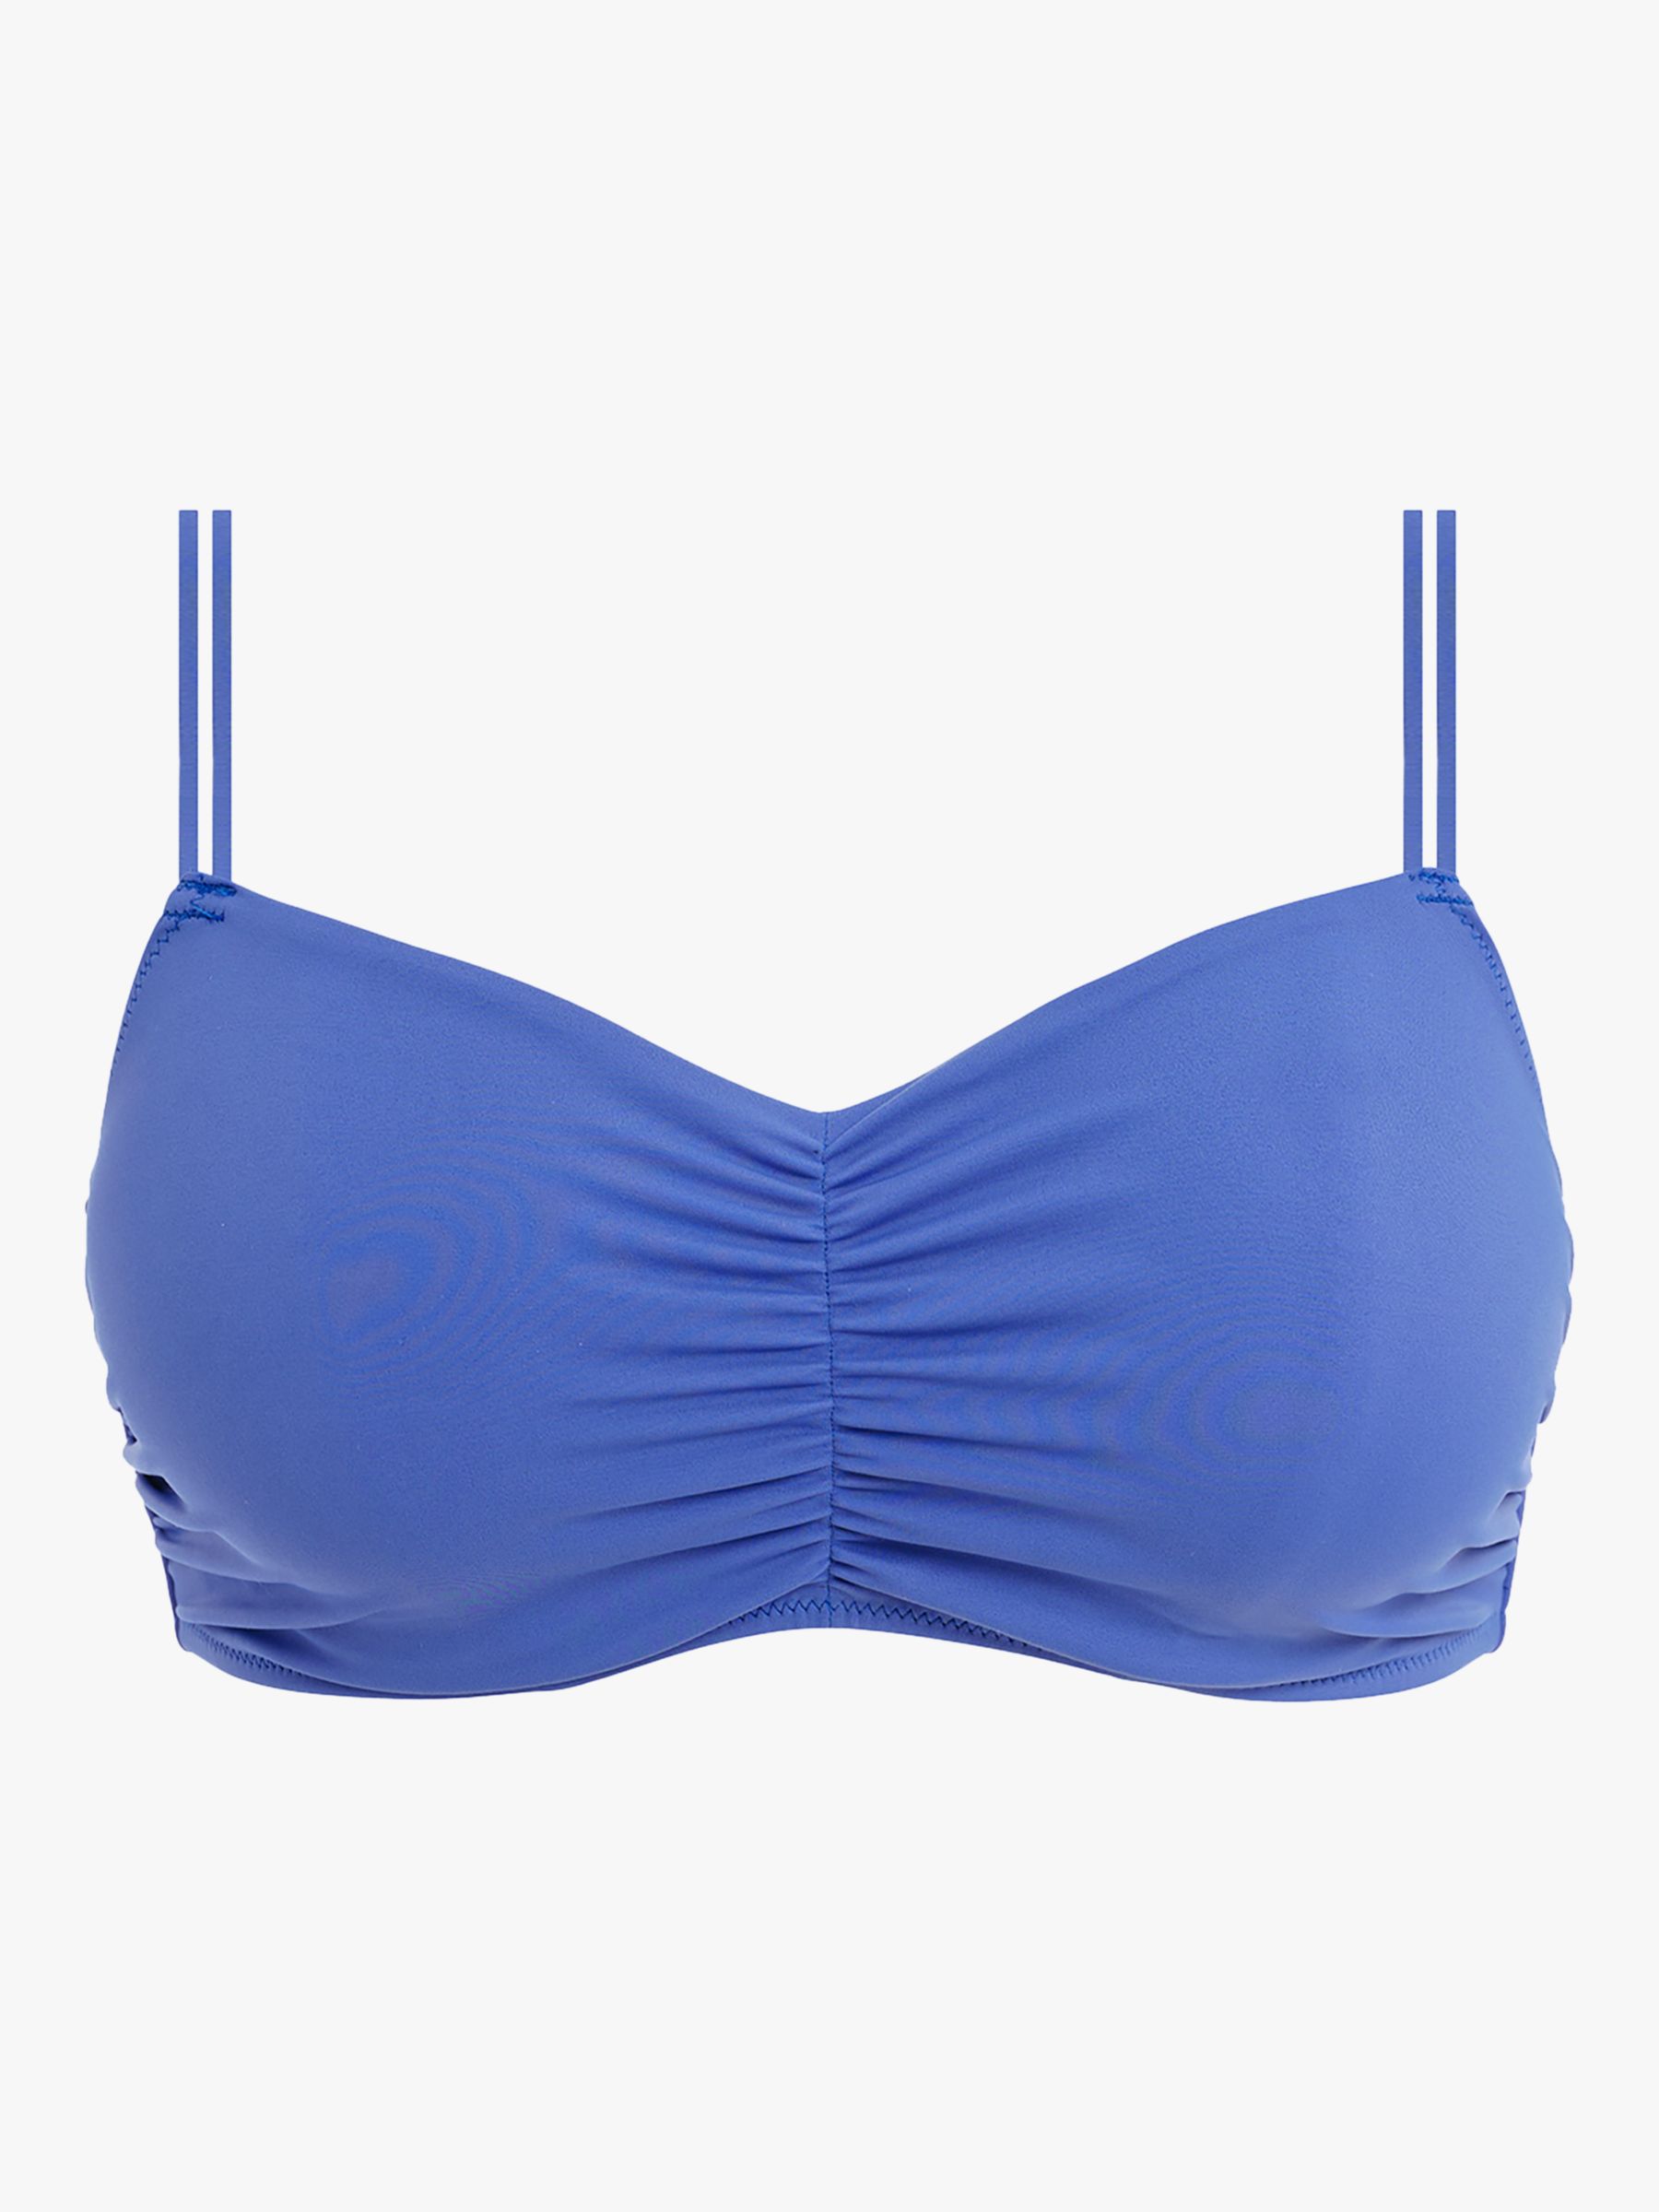 Freya Jewel Cove Plain Bralette Bikini Top, Azure, 32DD